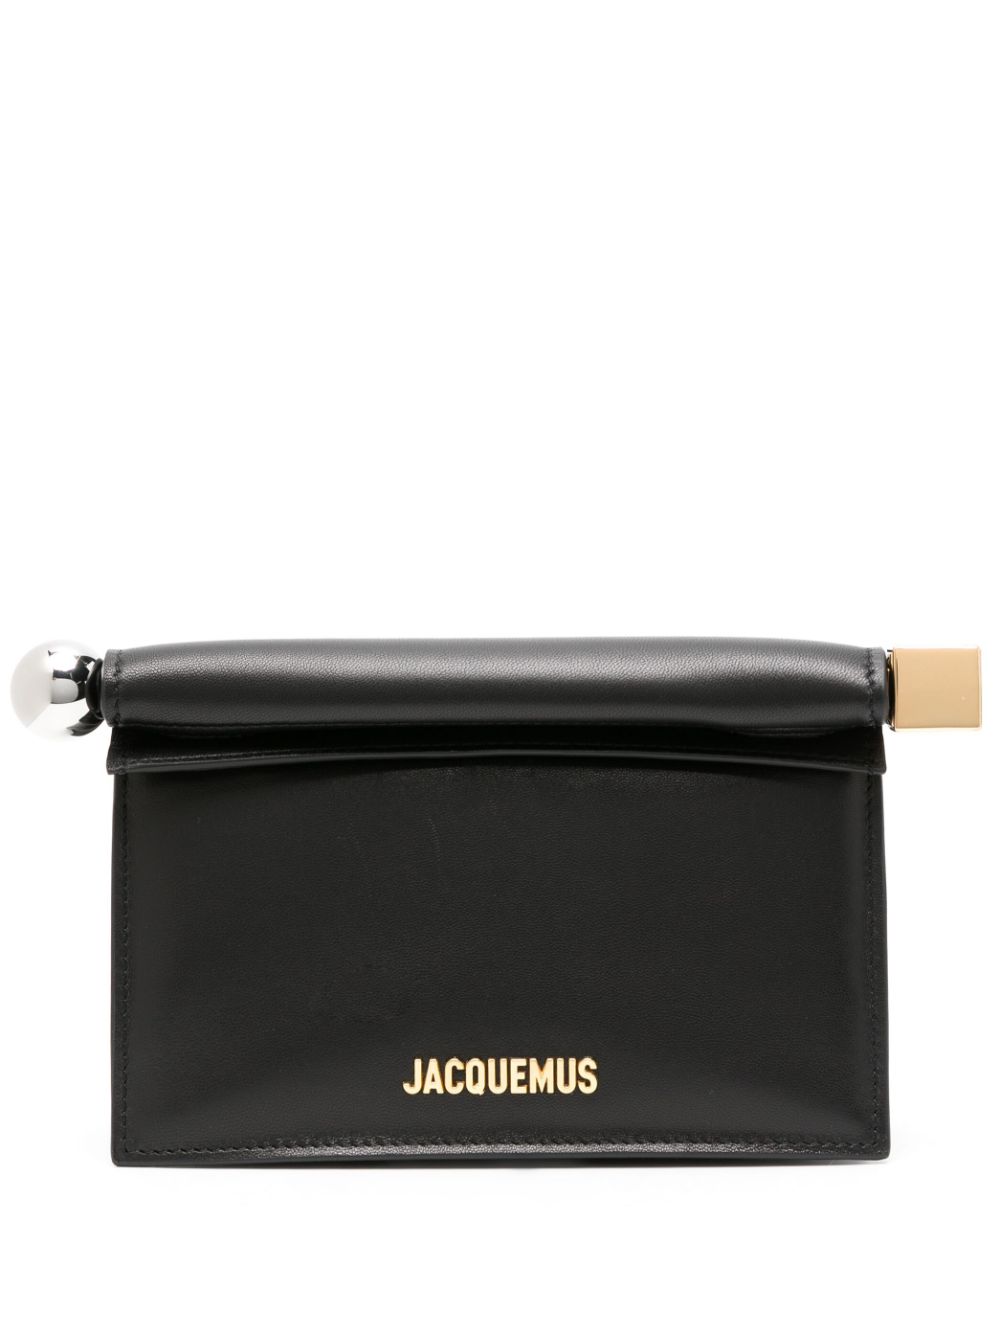 Shop Jacquemus La Petite Pochette Rond Carré Clutch Bag In Black